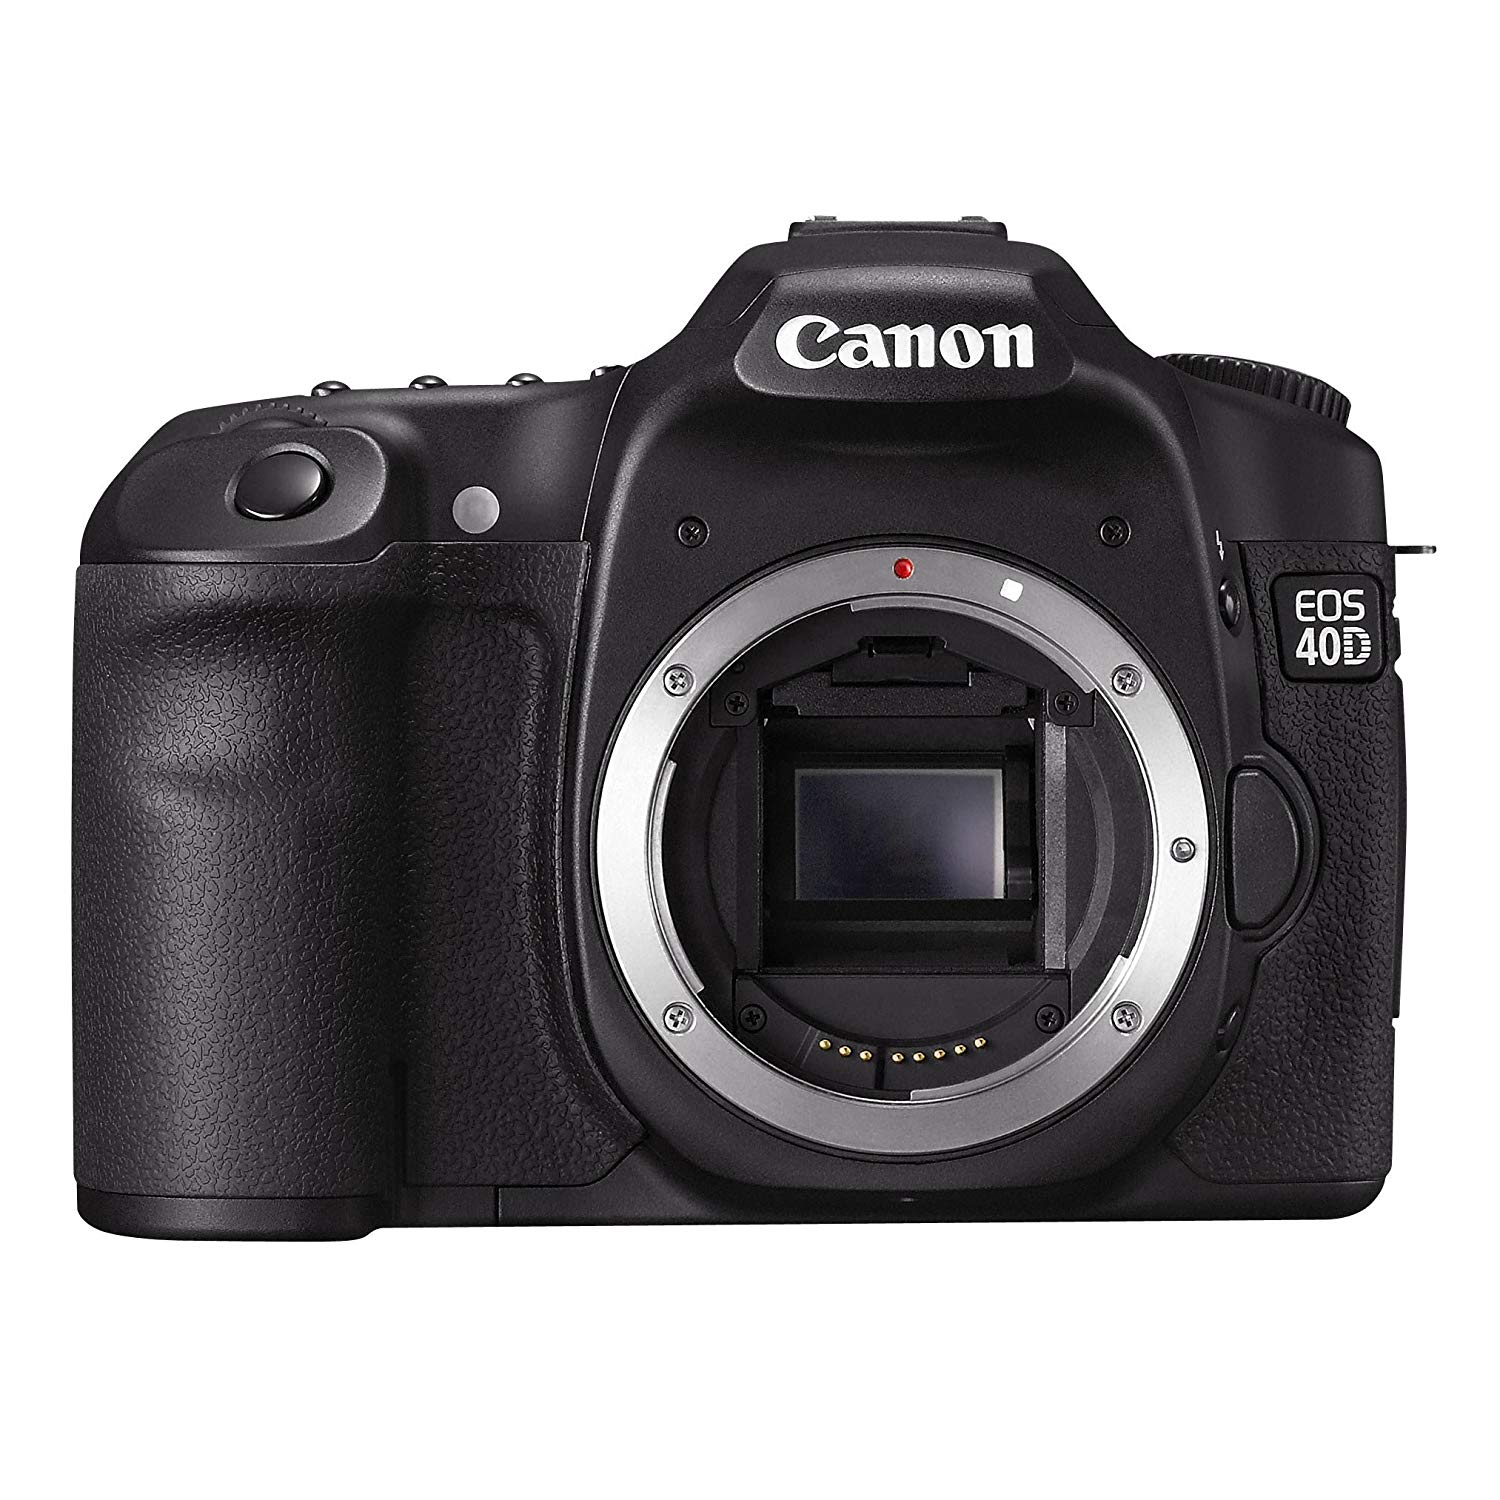 Canon 40D là một trong những máy ảnh đã trở thành huyền thoại của Canon. Với cảm biến 10,1 MP và khả năng chụp liên tục 6,5 khung hình/giây, Canon 40D Body sẽ là một lựa chọn tuyệt vời cho những ai đang tìm kiếm một chiếc máy ảnh cũ với giá thành hợp lý.